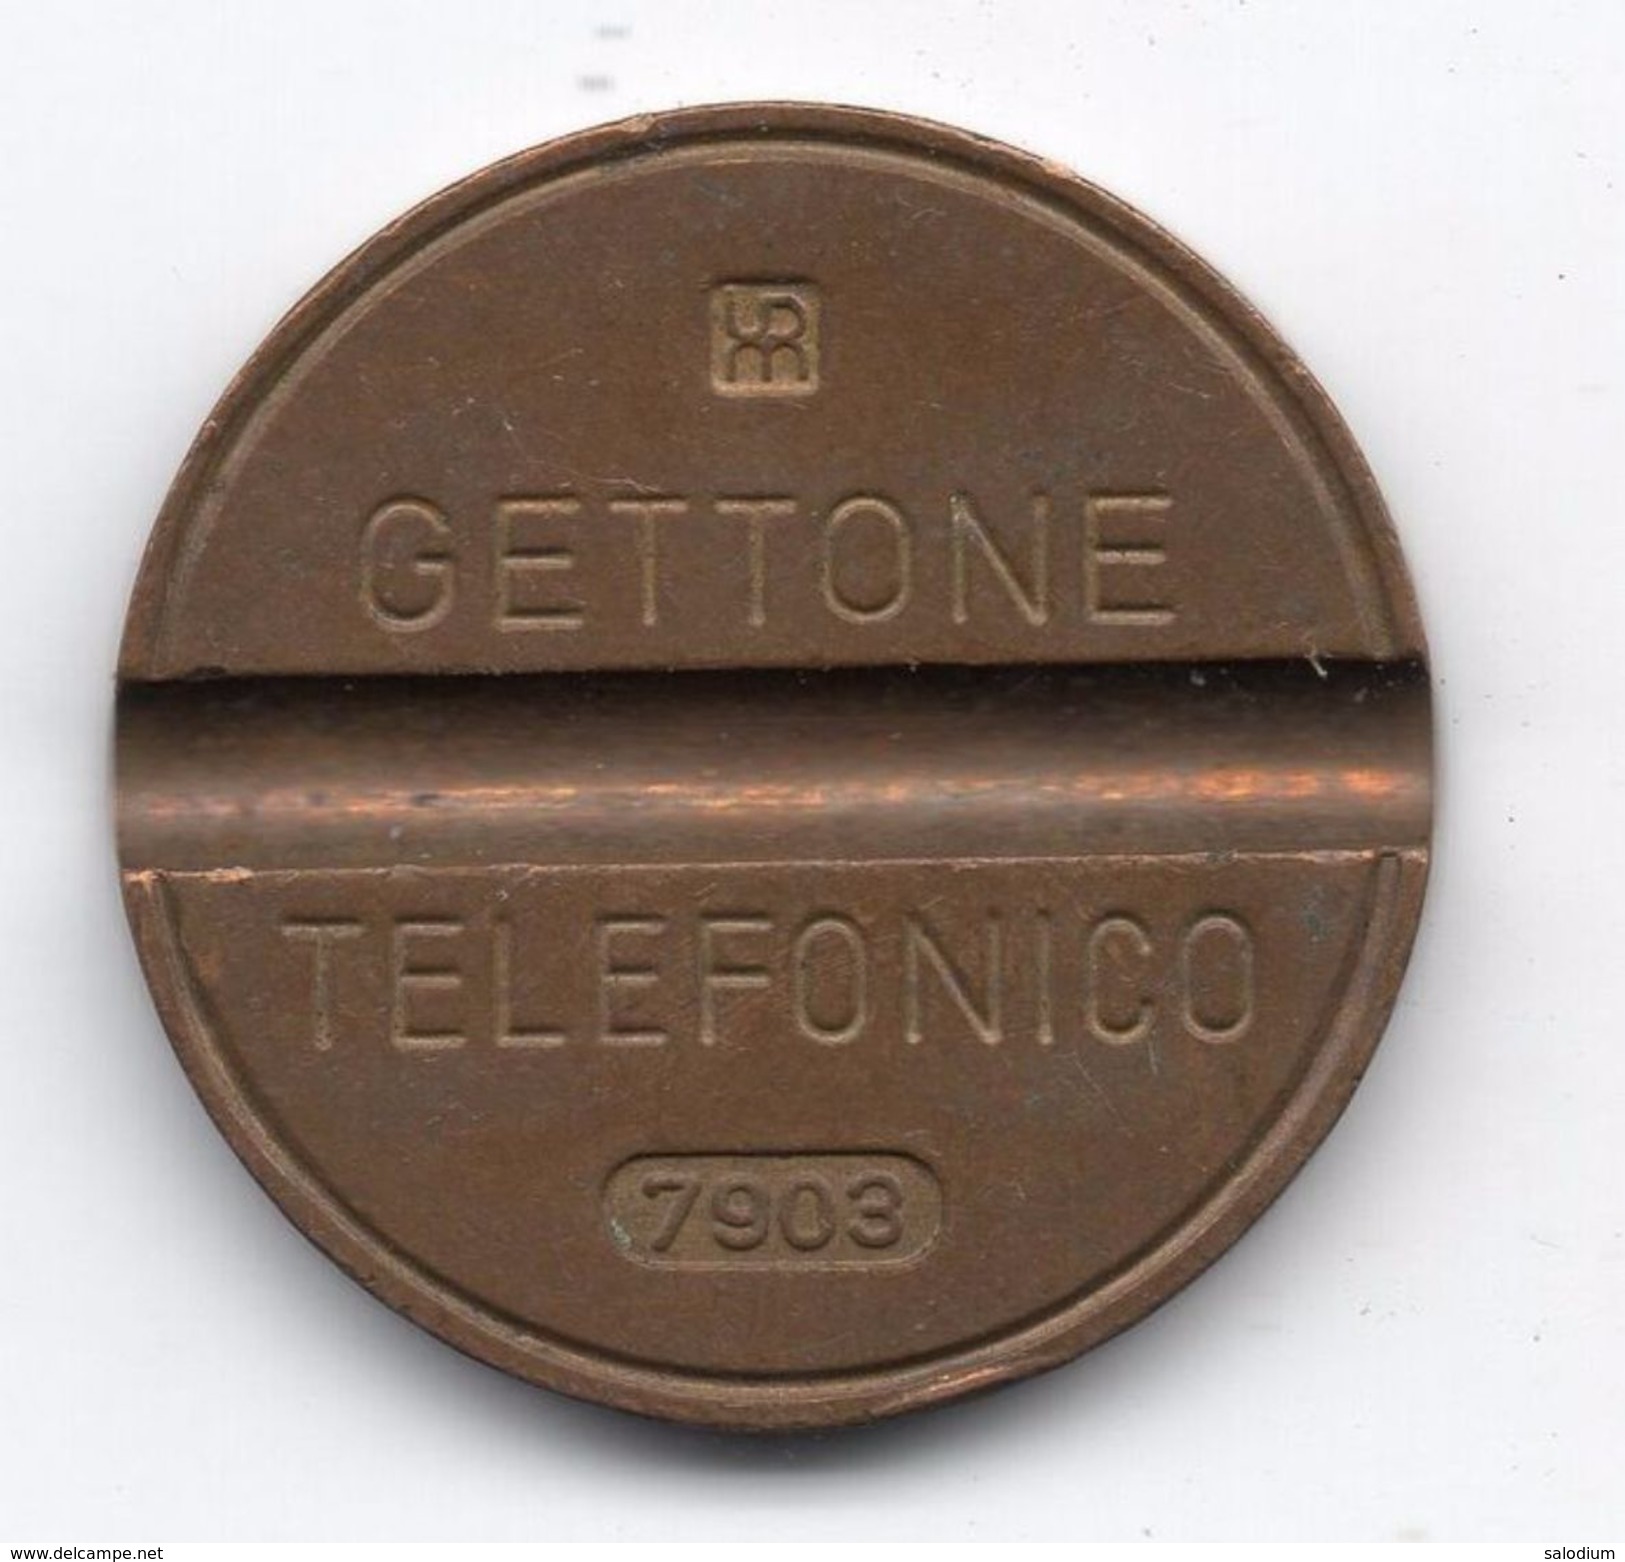 Gettone Telefonico 7903  Token Telephone - (Id-885) - Professionnels/De Société